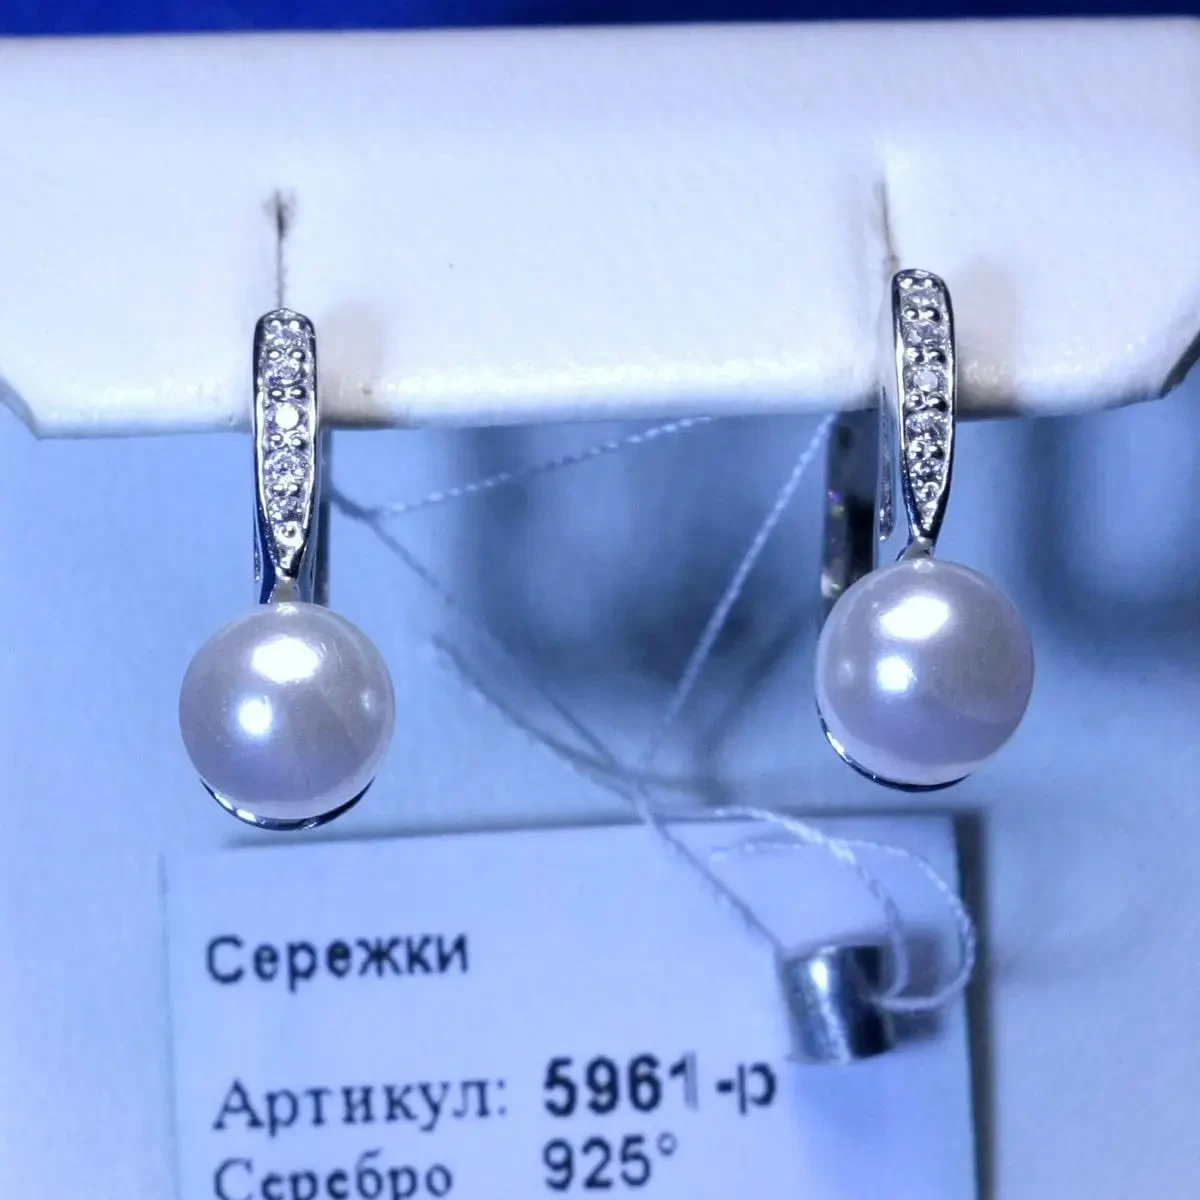 Срібні сережки з перлиною і фіанітами 5961-р, фото 1